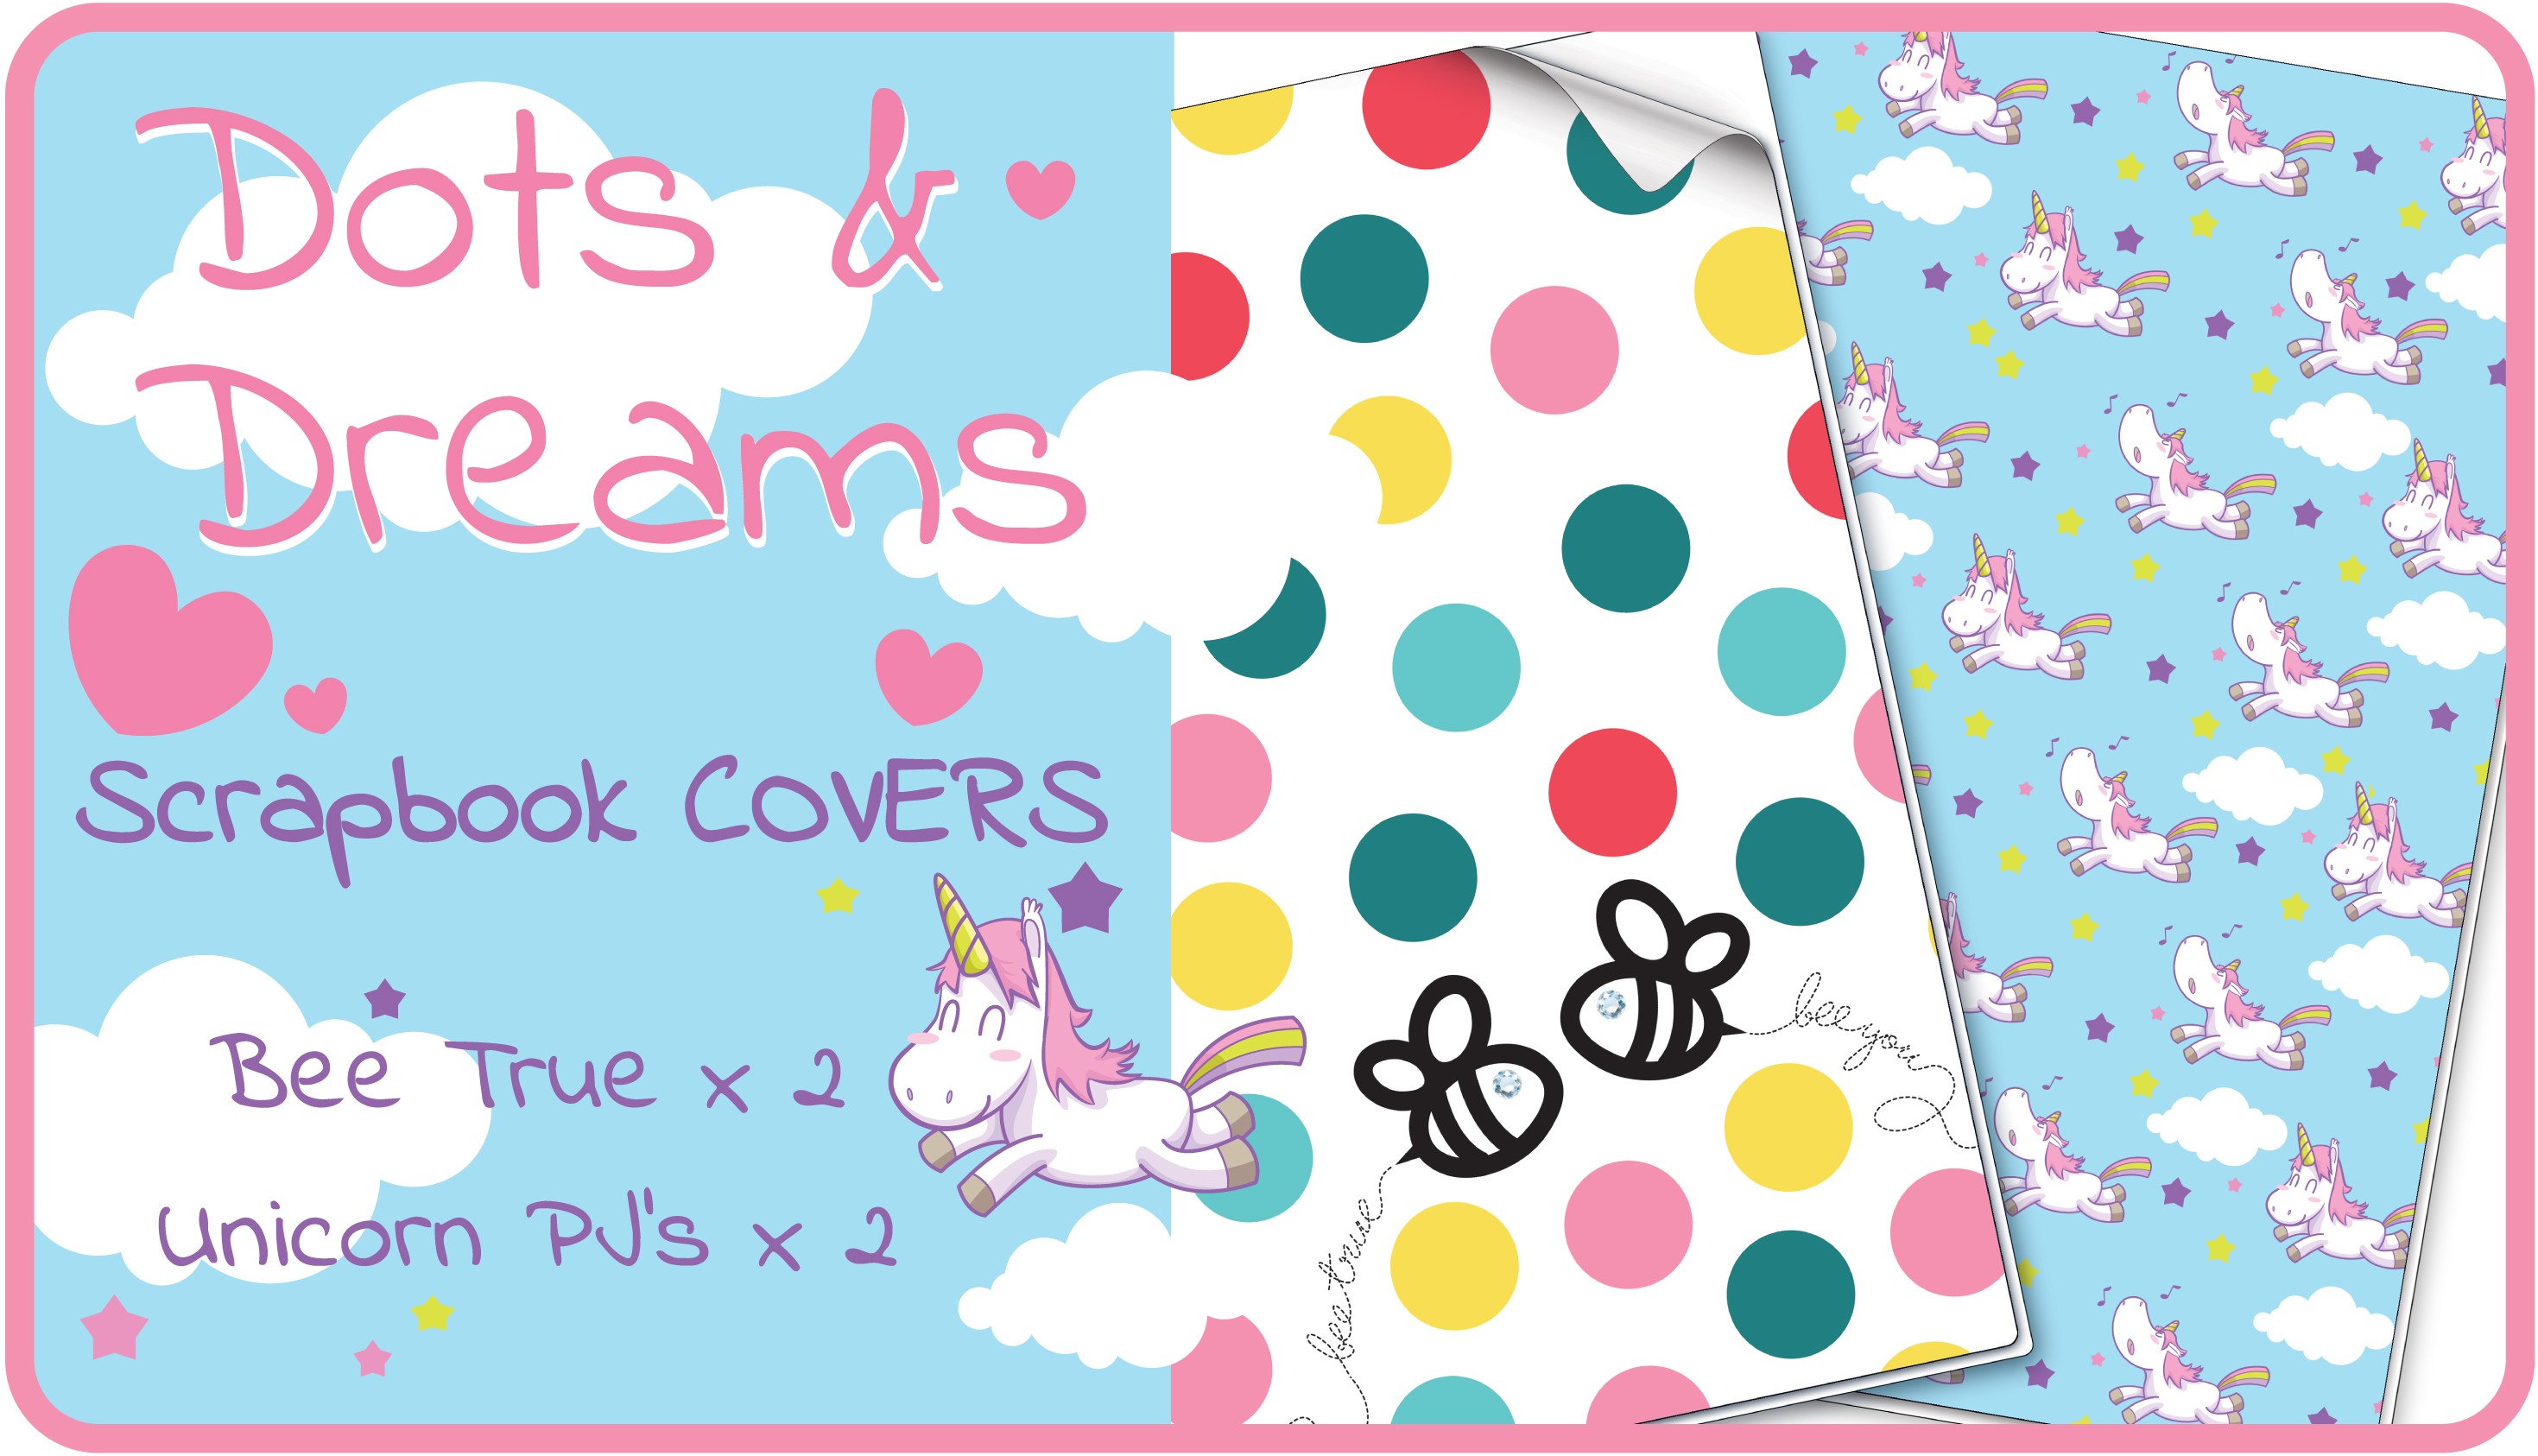 Dots & Dreams Scrapbook Cover Pack